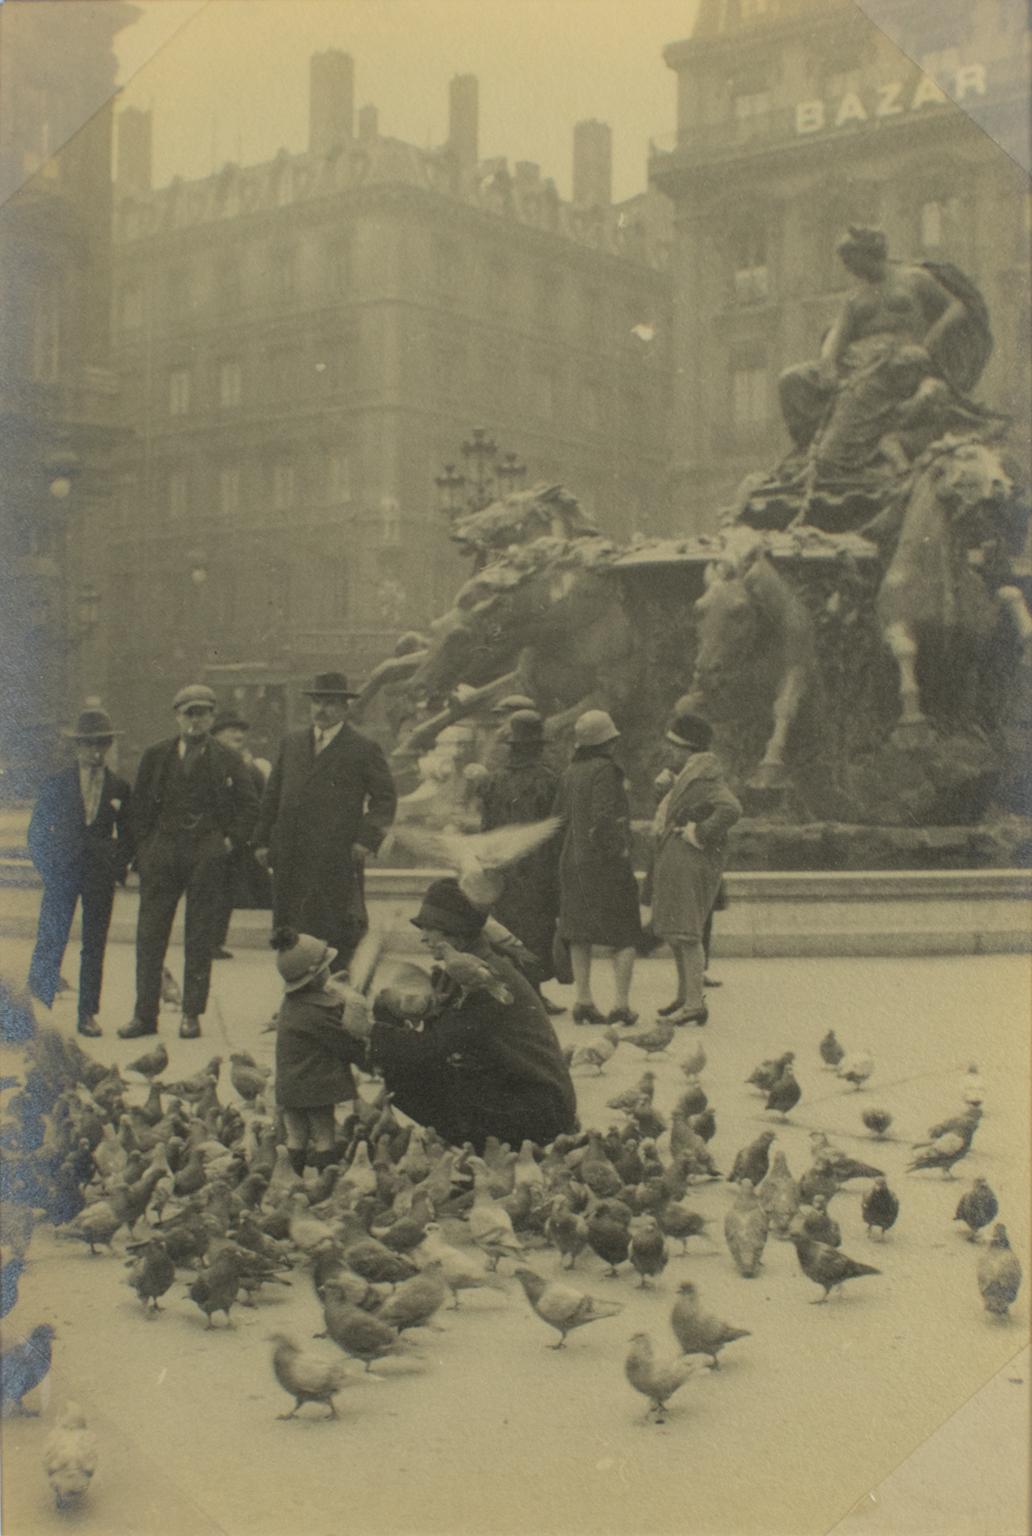 Pigmente beim Futter in Lyon, Frankreich 1927, Silber-Gelatine-Schwarz-Weiß-Fotografie